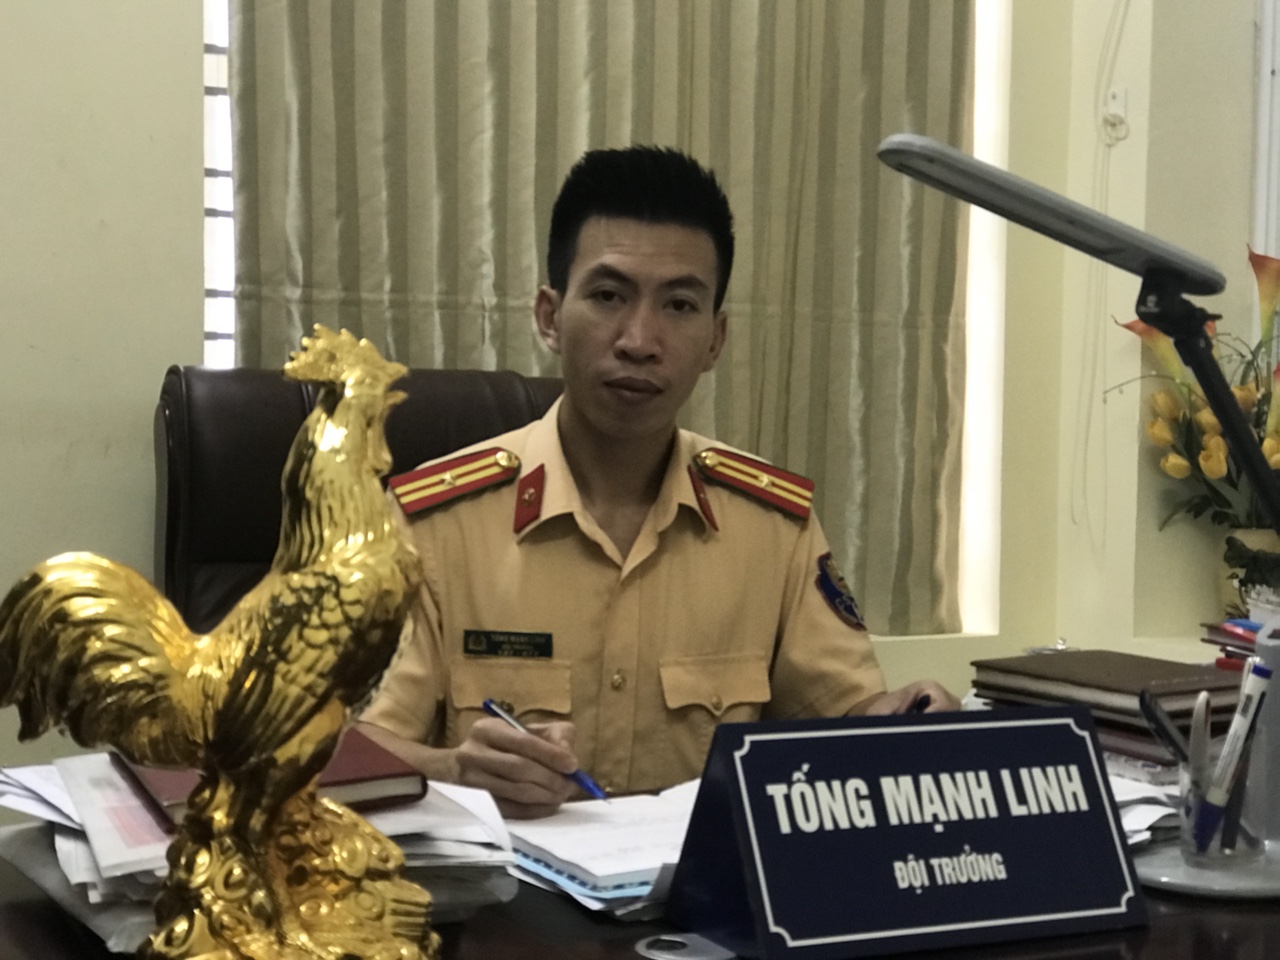 Thiếu tá Tống Mạnh Linh - Đội trưởng Đội CSGT-TT-CĐ CAH An Dương luôn nêu cao trách nhiệm công việc được giao